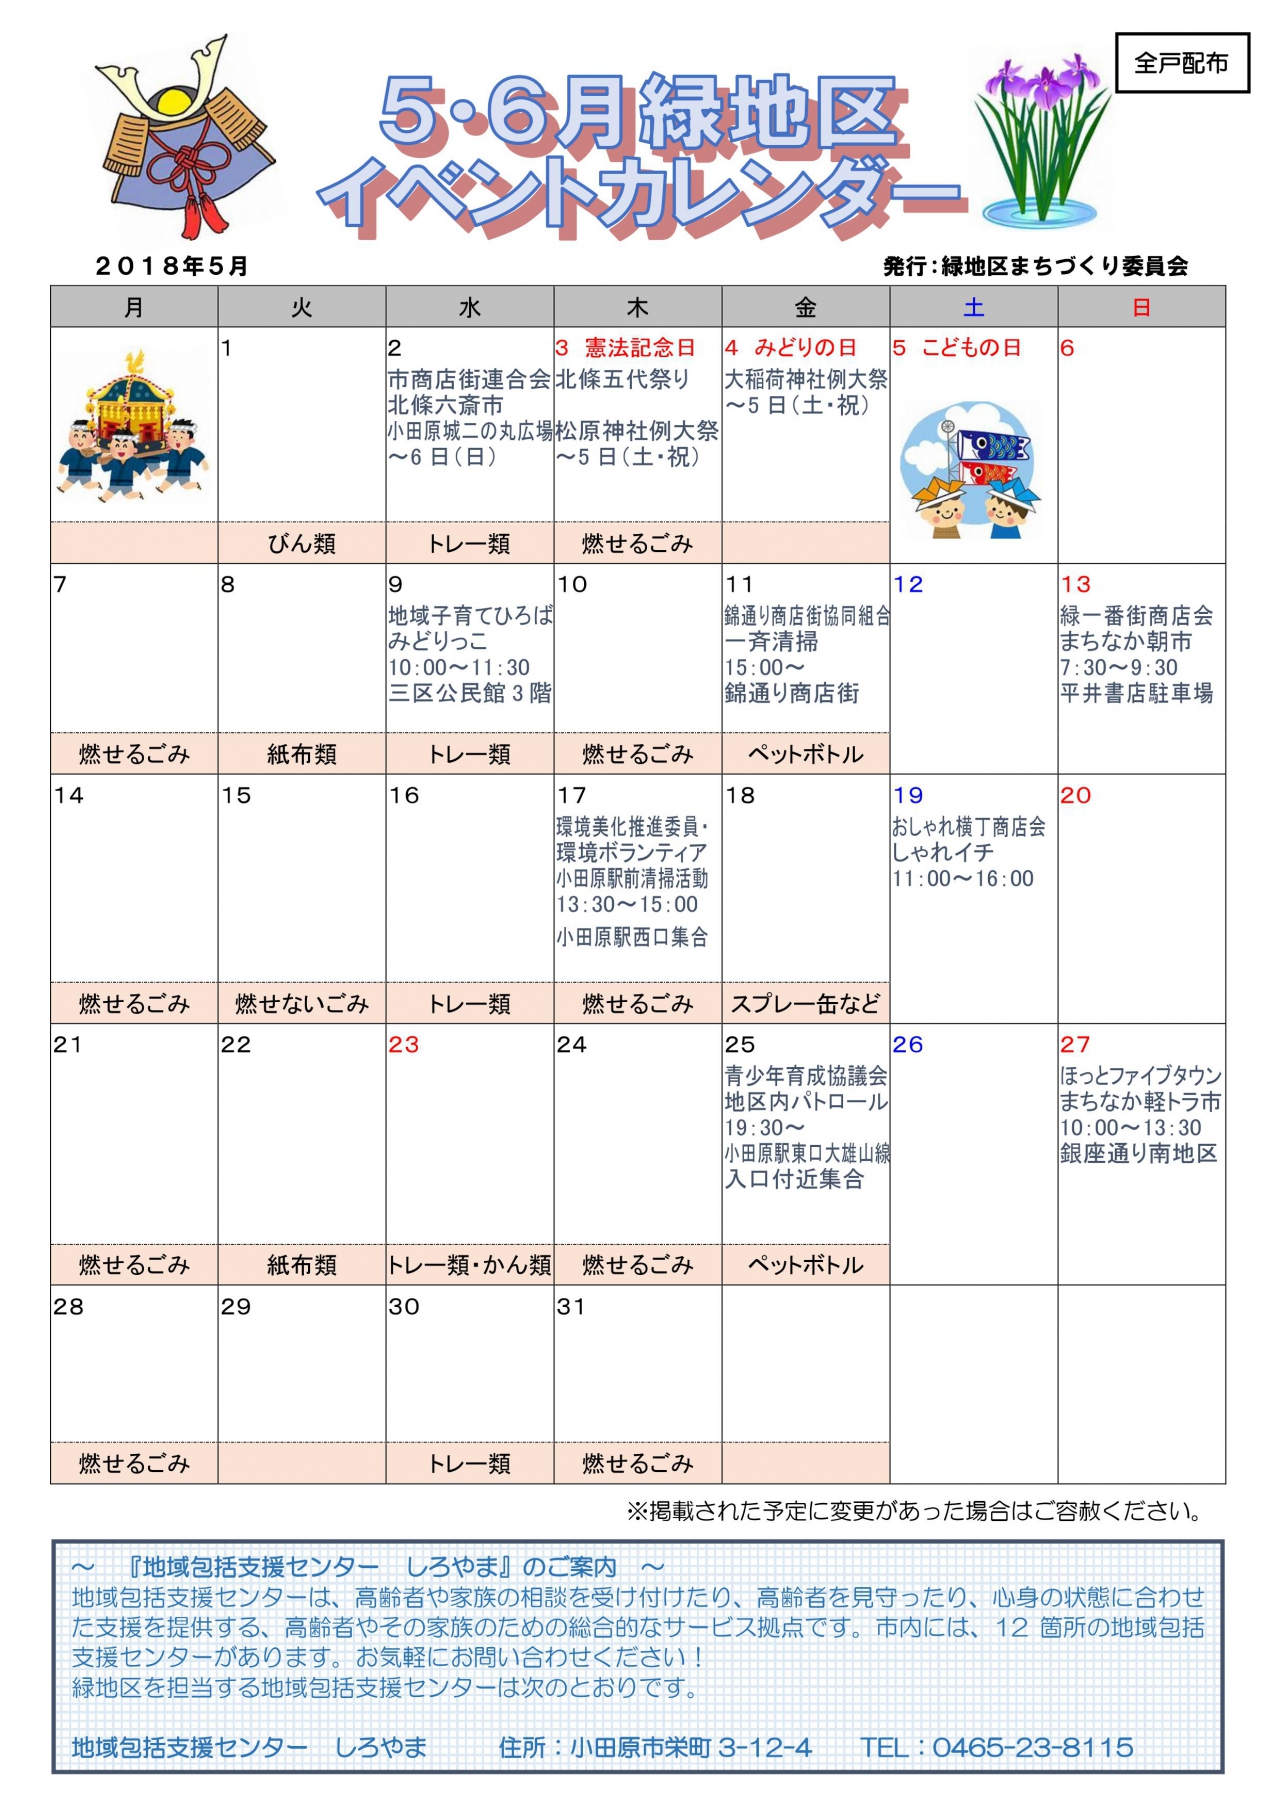 緑地区イベントカレンダー 5月6月発行 各自治会からのお知らせ 小田原自治会総連合